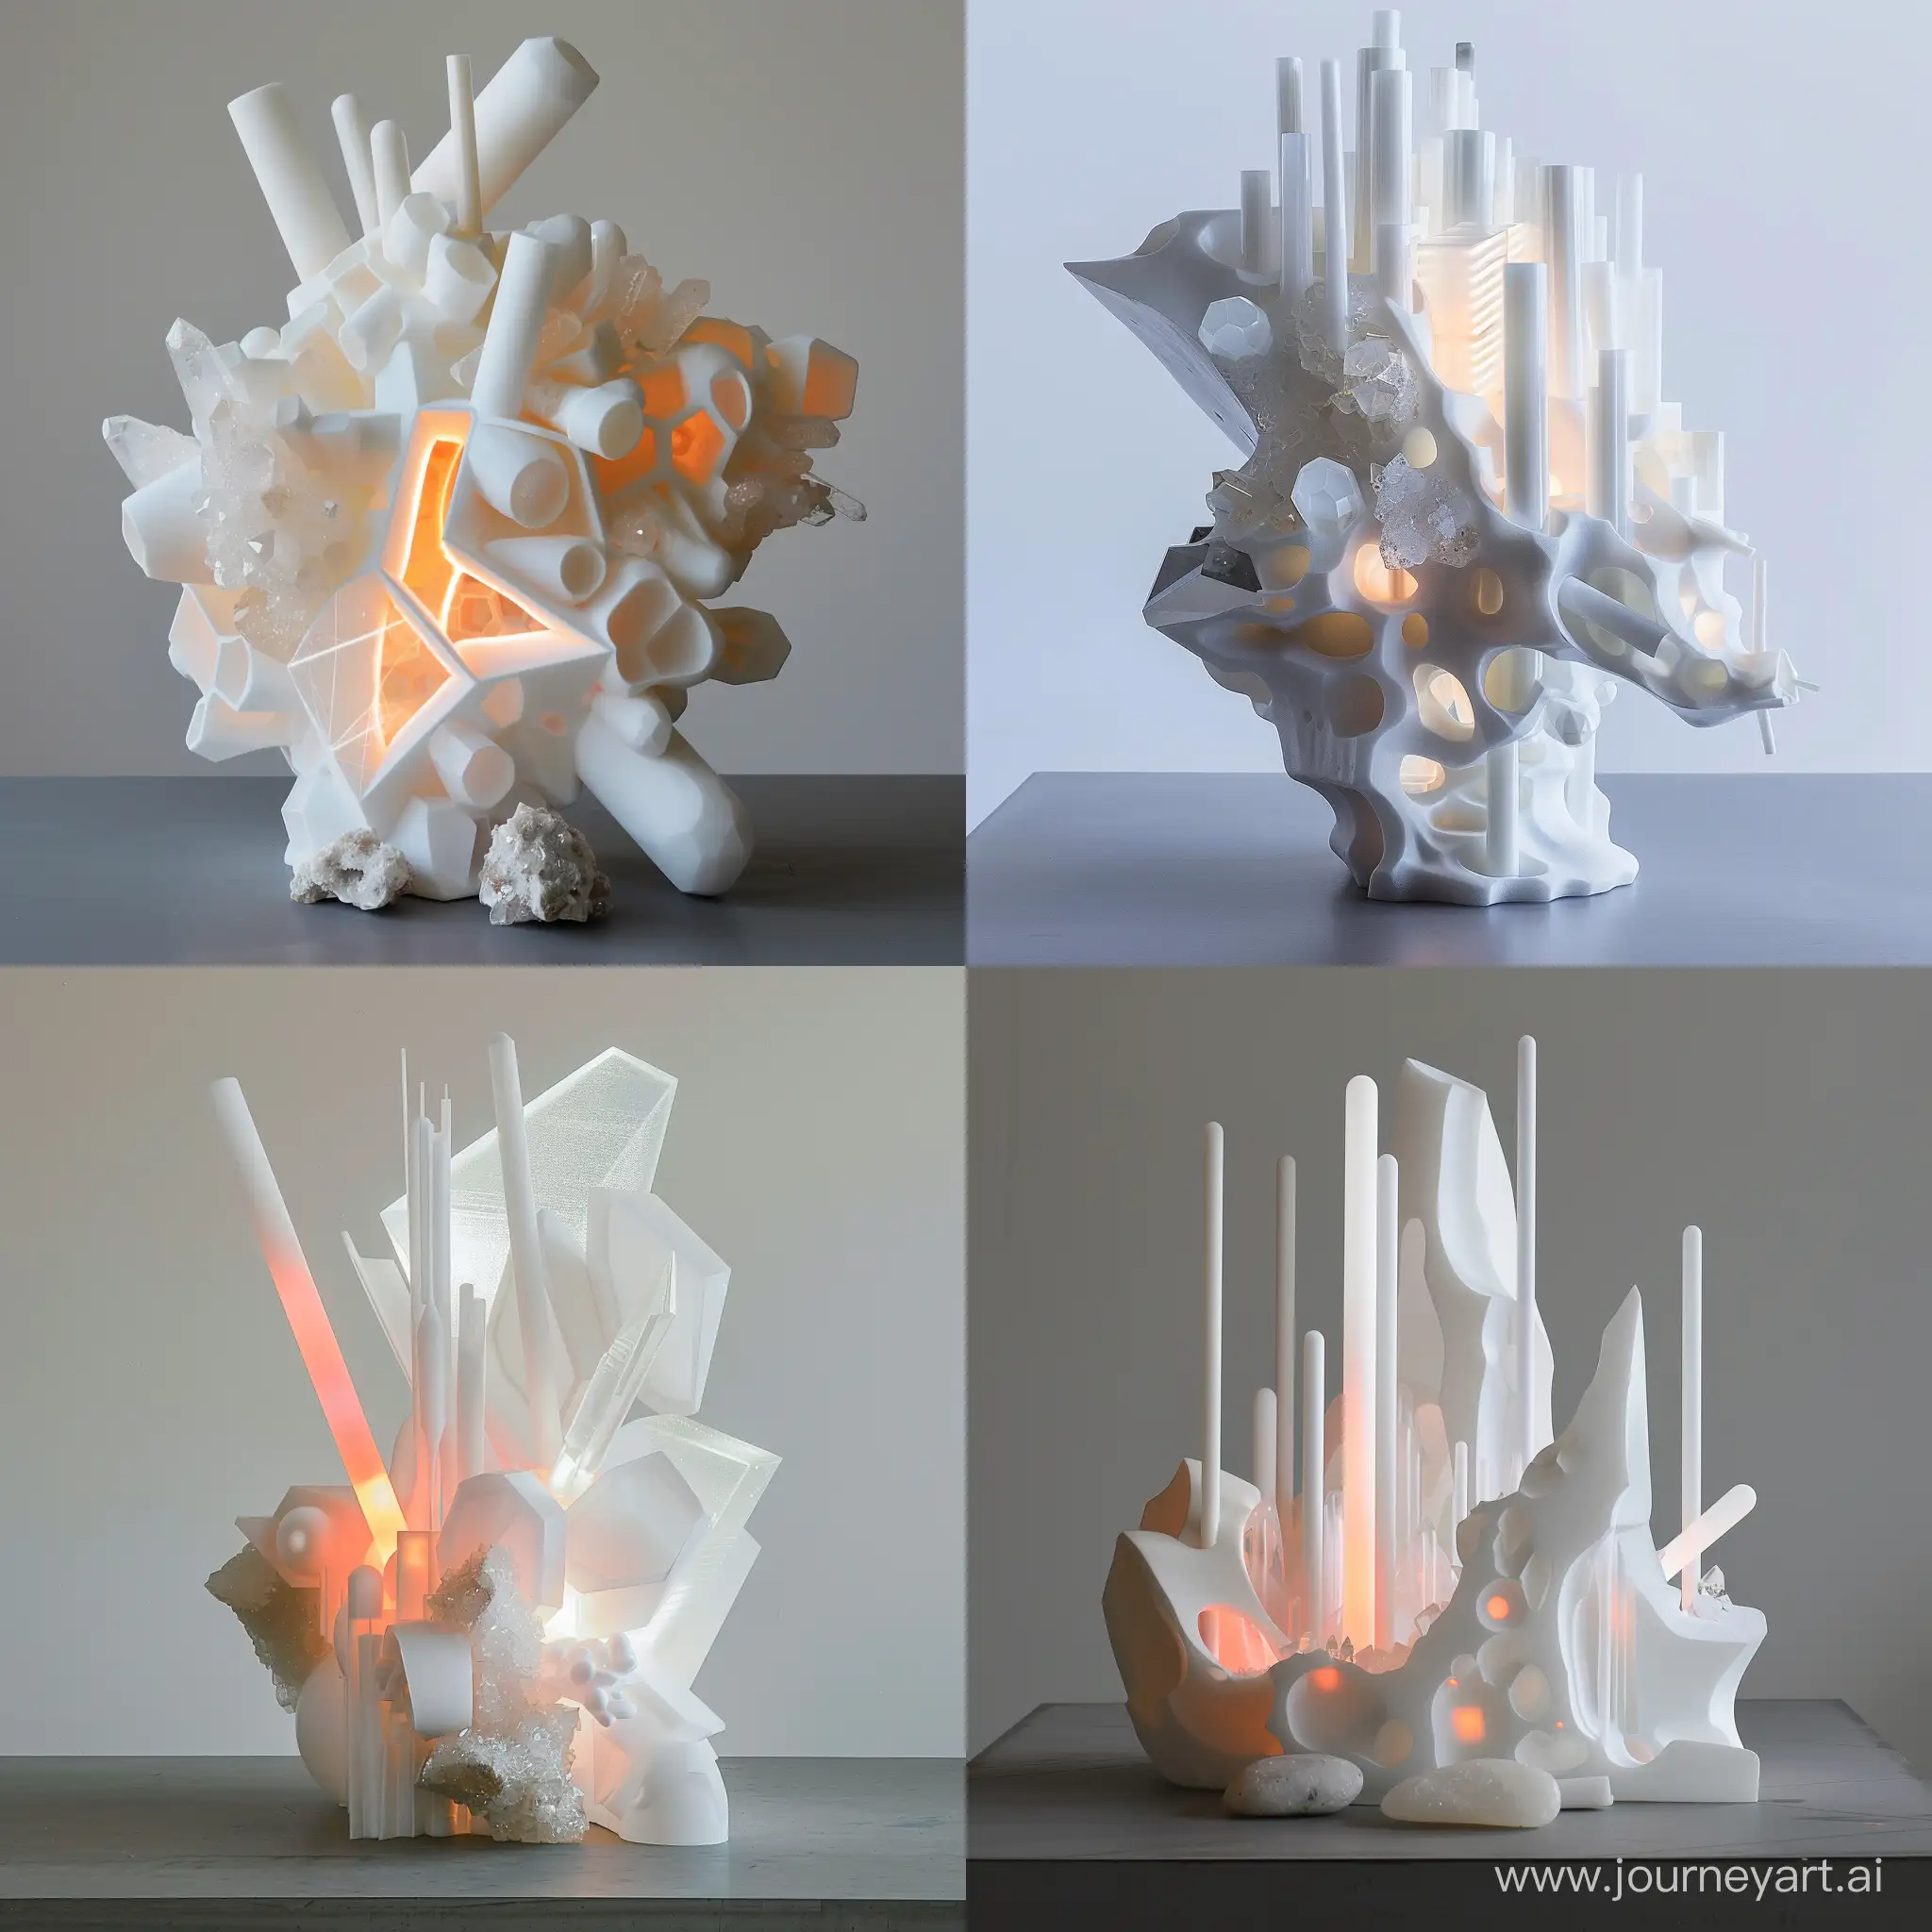 Futuristic-Bioluminescent-Sculpture-Cyberpunk-Art-of-the-Future